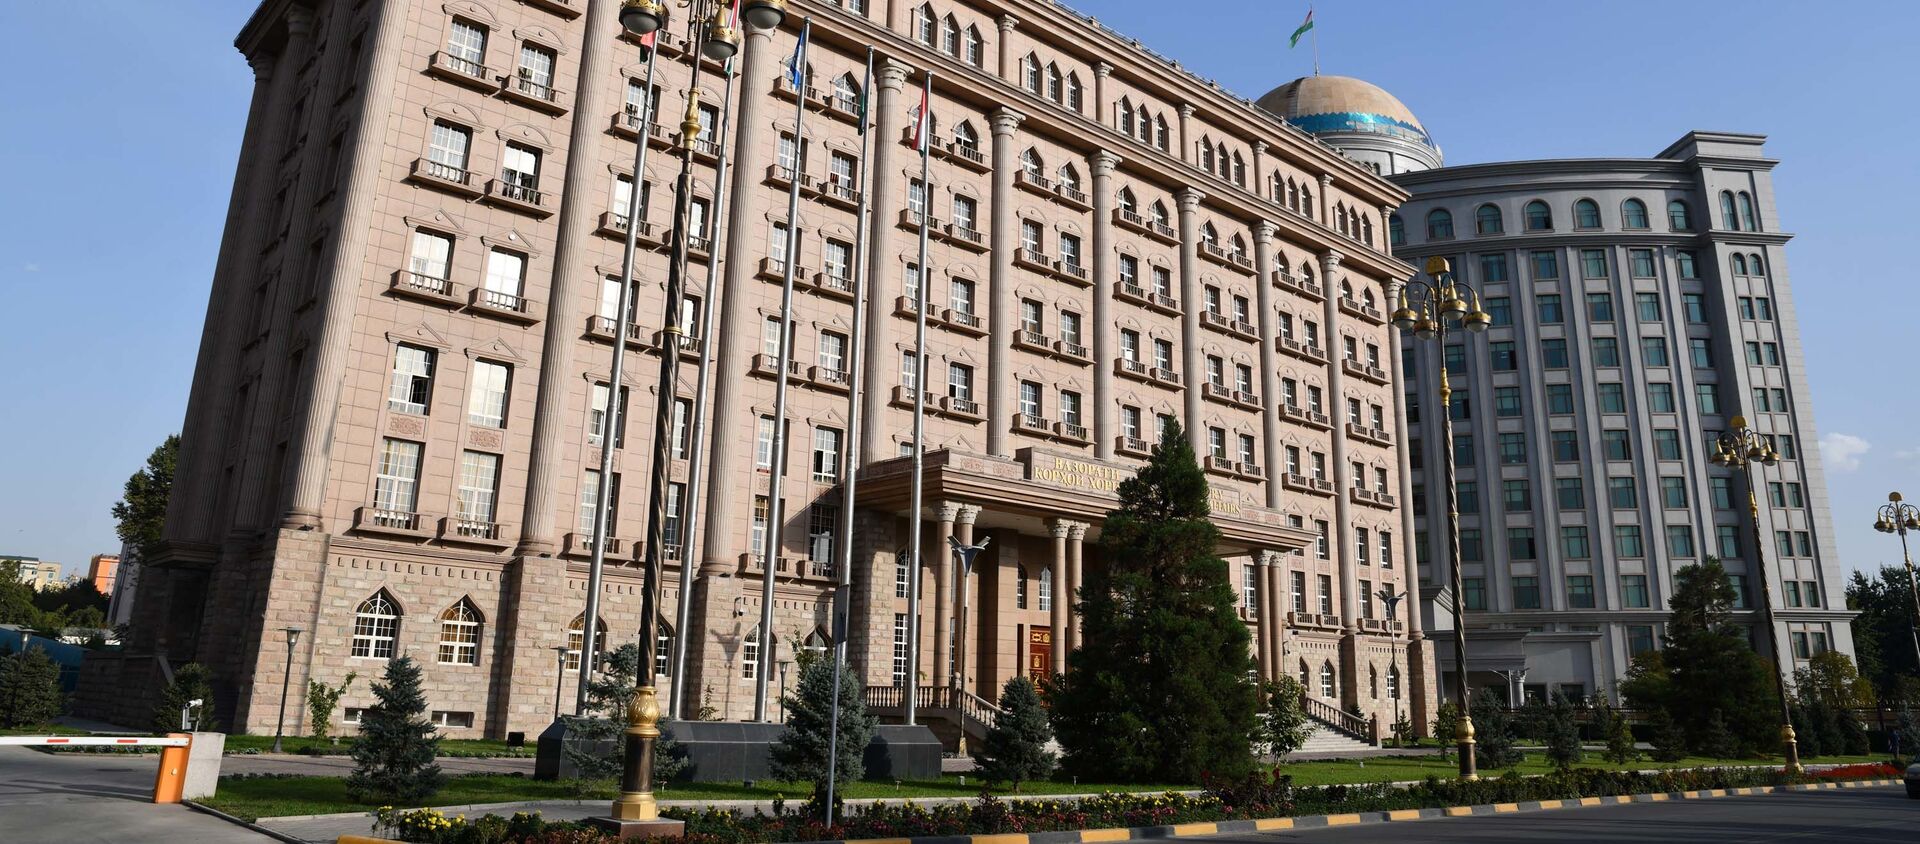 Министерство иностранных дел Республики Таджикистан в Душанбе - Sputnik Таджикистан, 1920, 24.07.2020